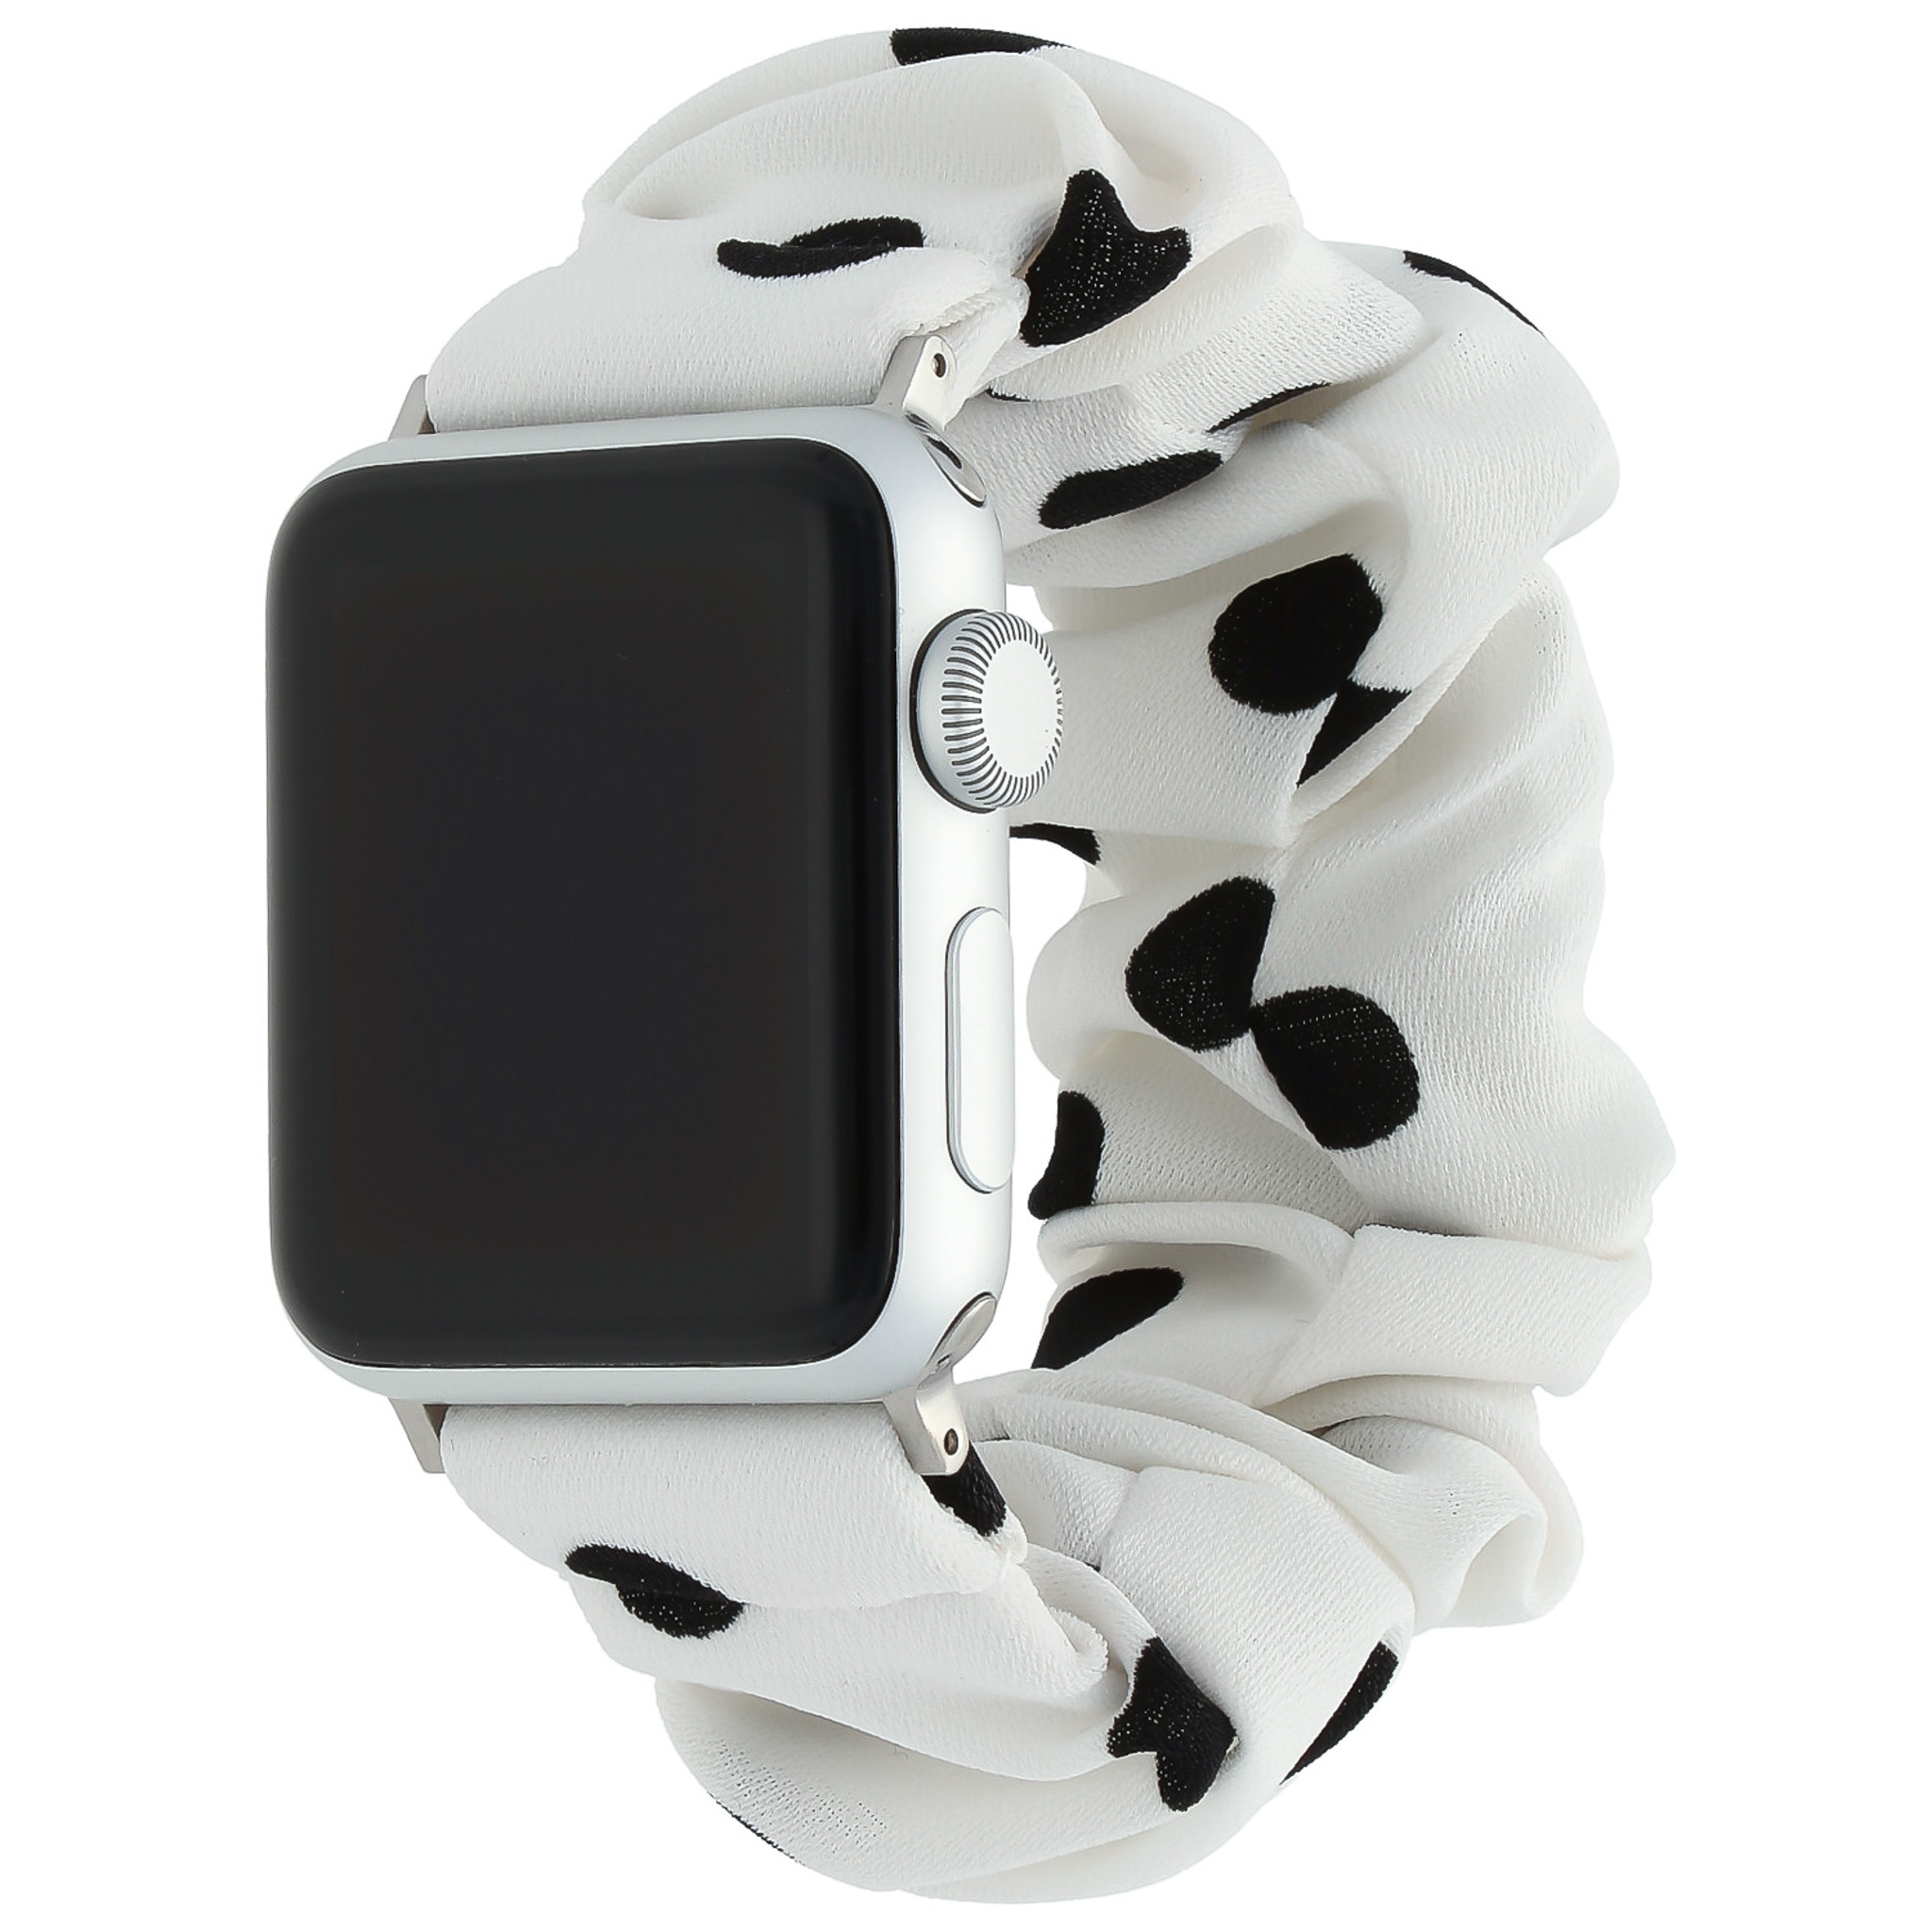 Correa elástica de nailon para el Apple Watch - blanca con lunares negros